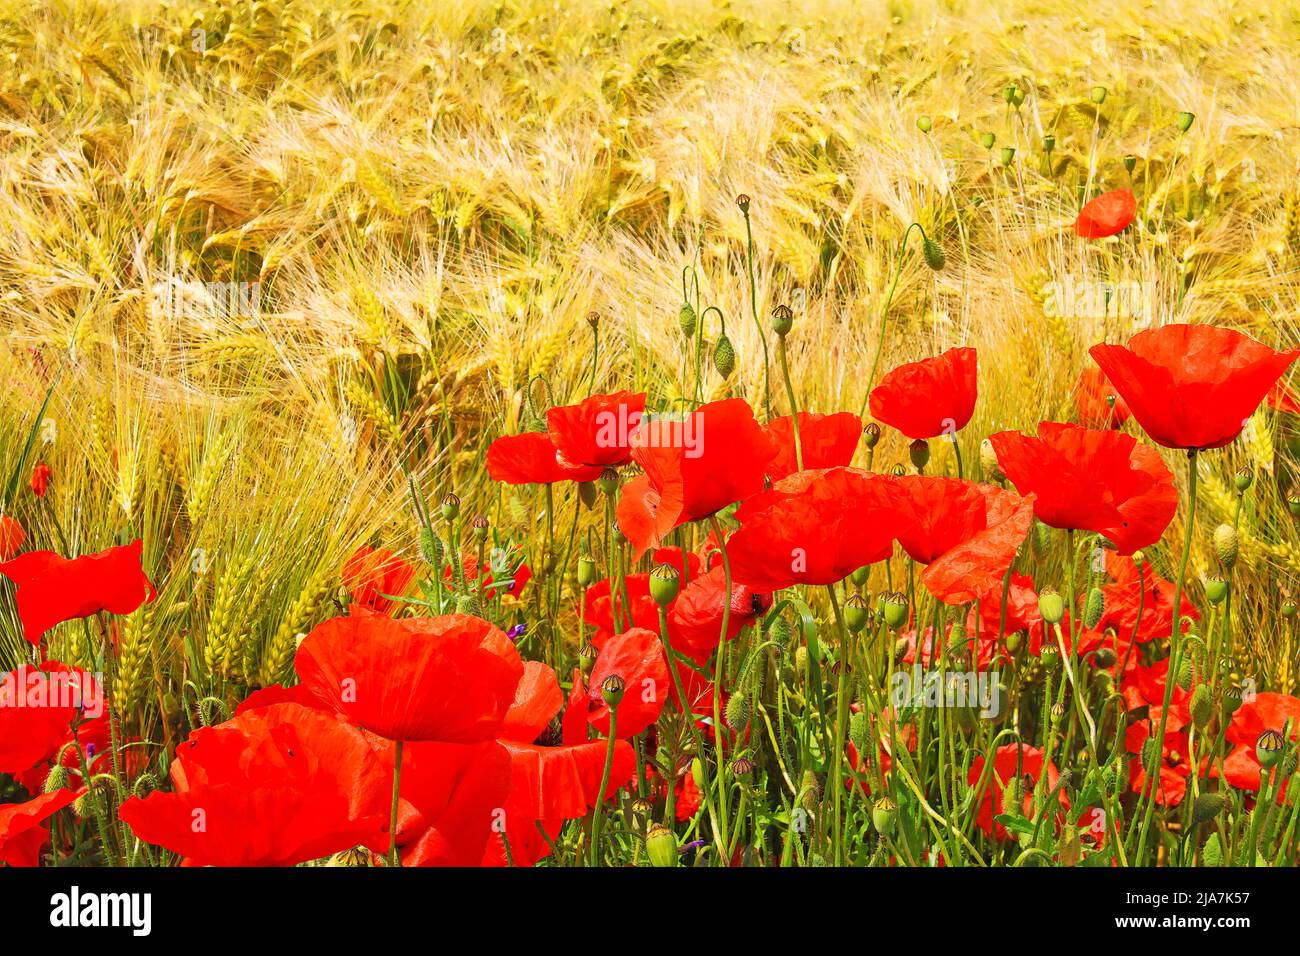 Hermoso campo de hierba de cebada amarilla madura listo para la cosecha, flores silvestres de adormidera de maíz rojo floreciente (Papaver rhoeas) - Alemania Foto de stock